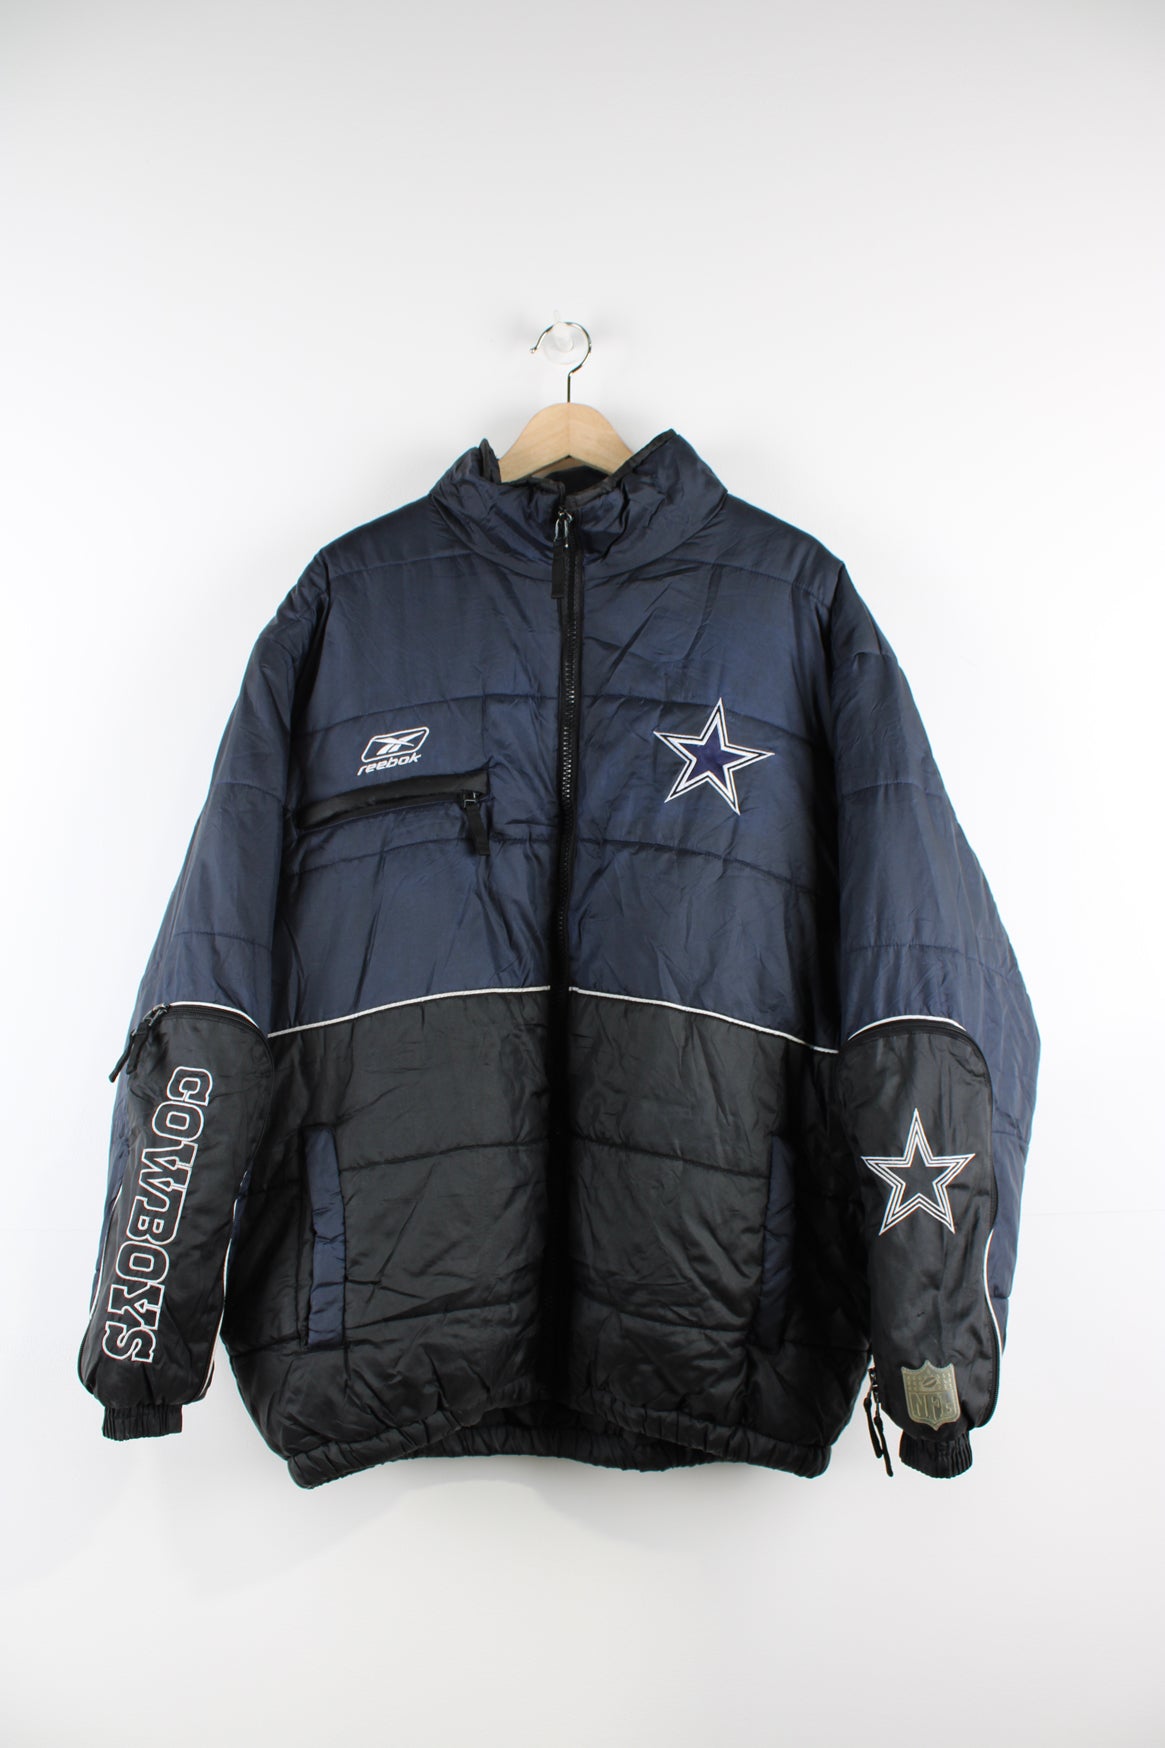 Vintage Dallas Cowboys Starer Parka Football Jacket, Size Medium